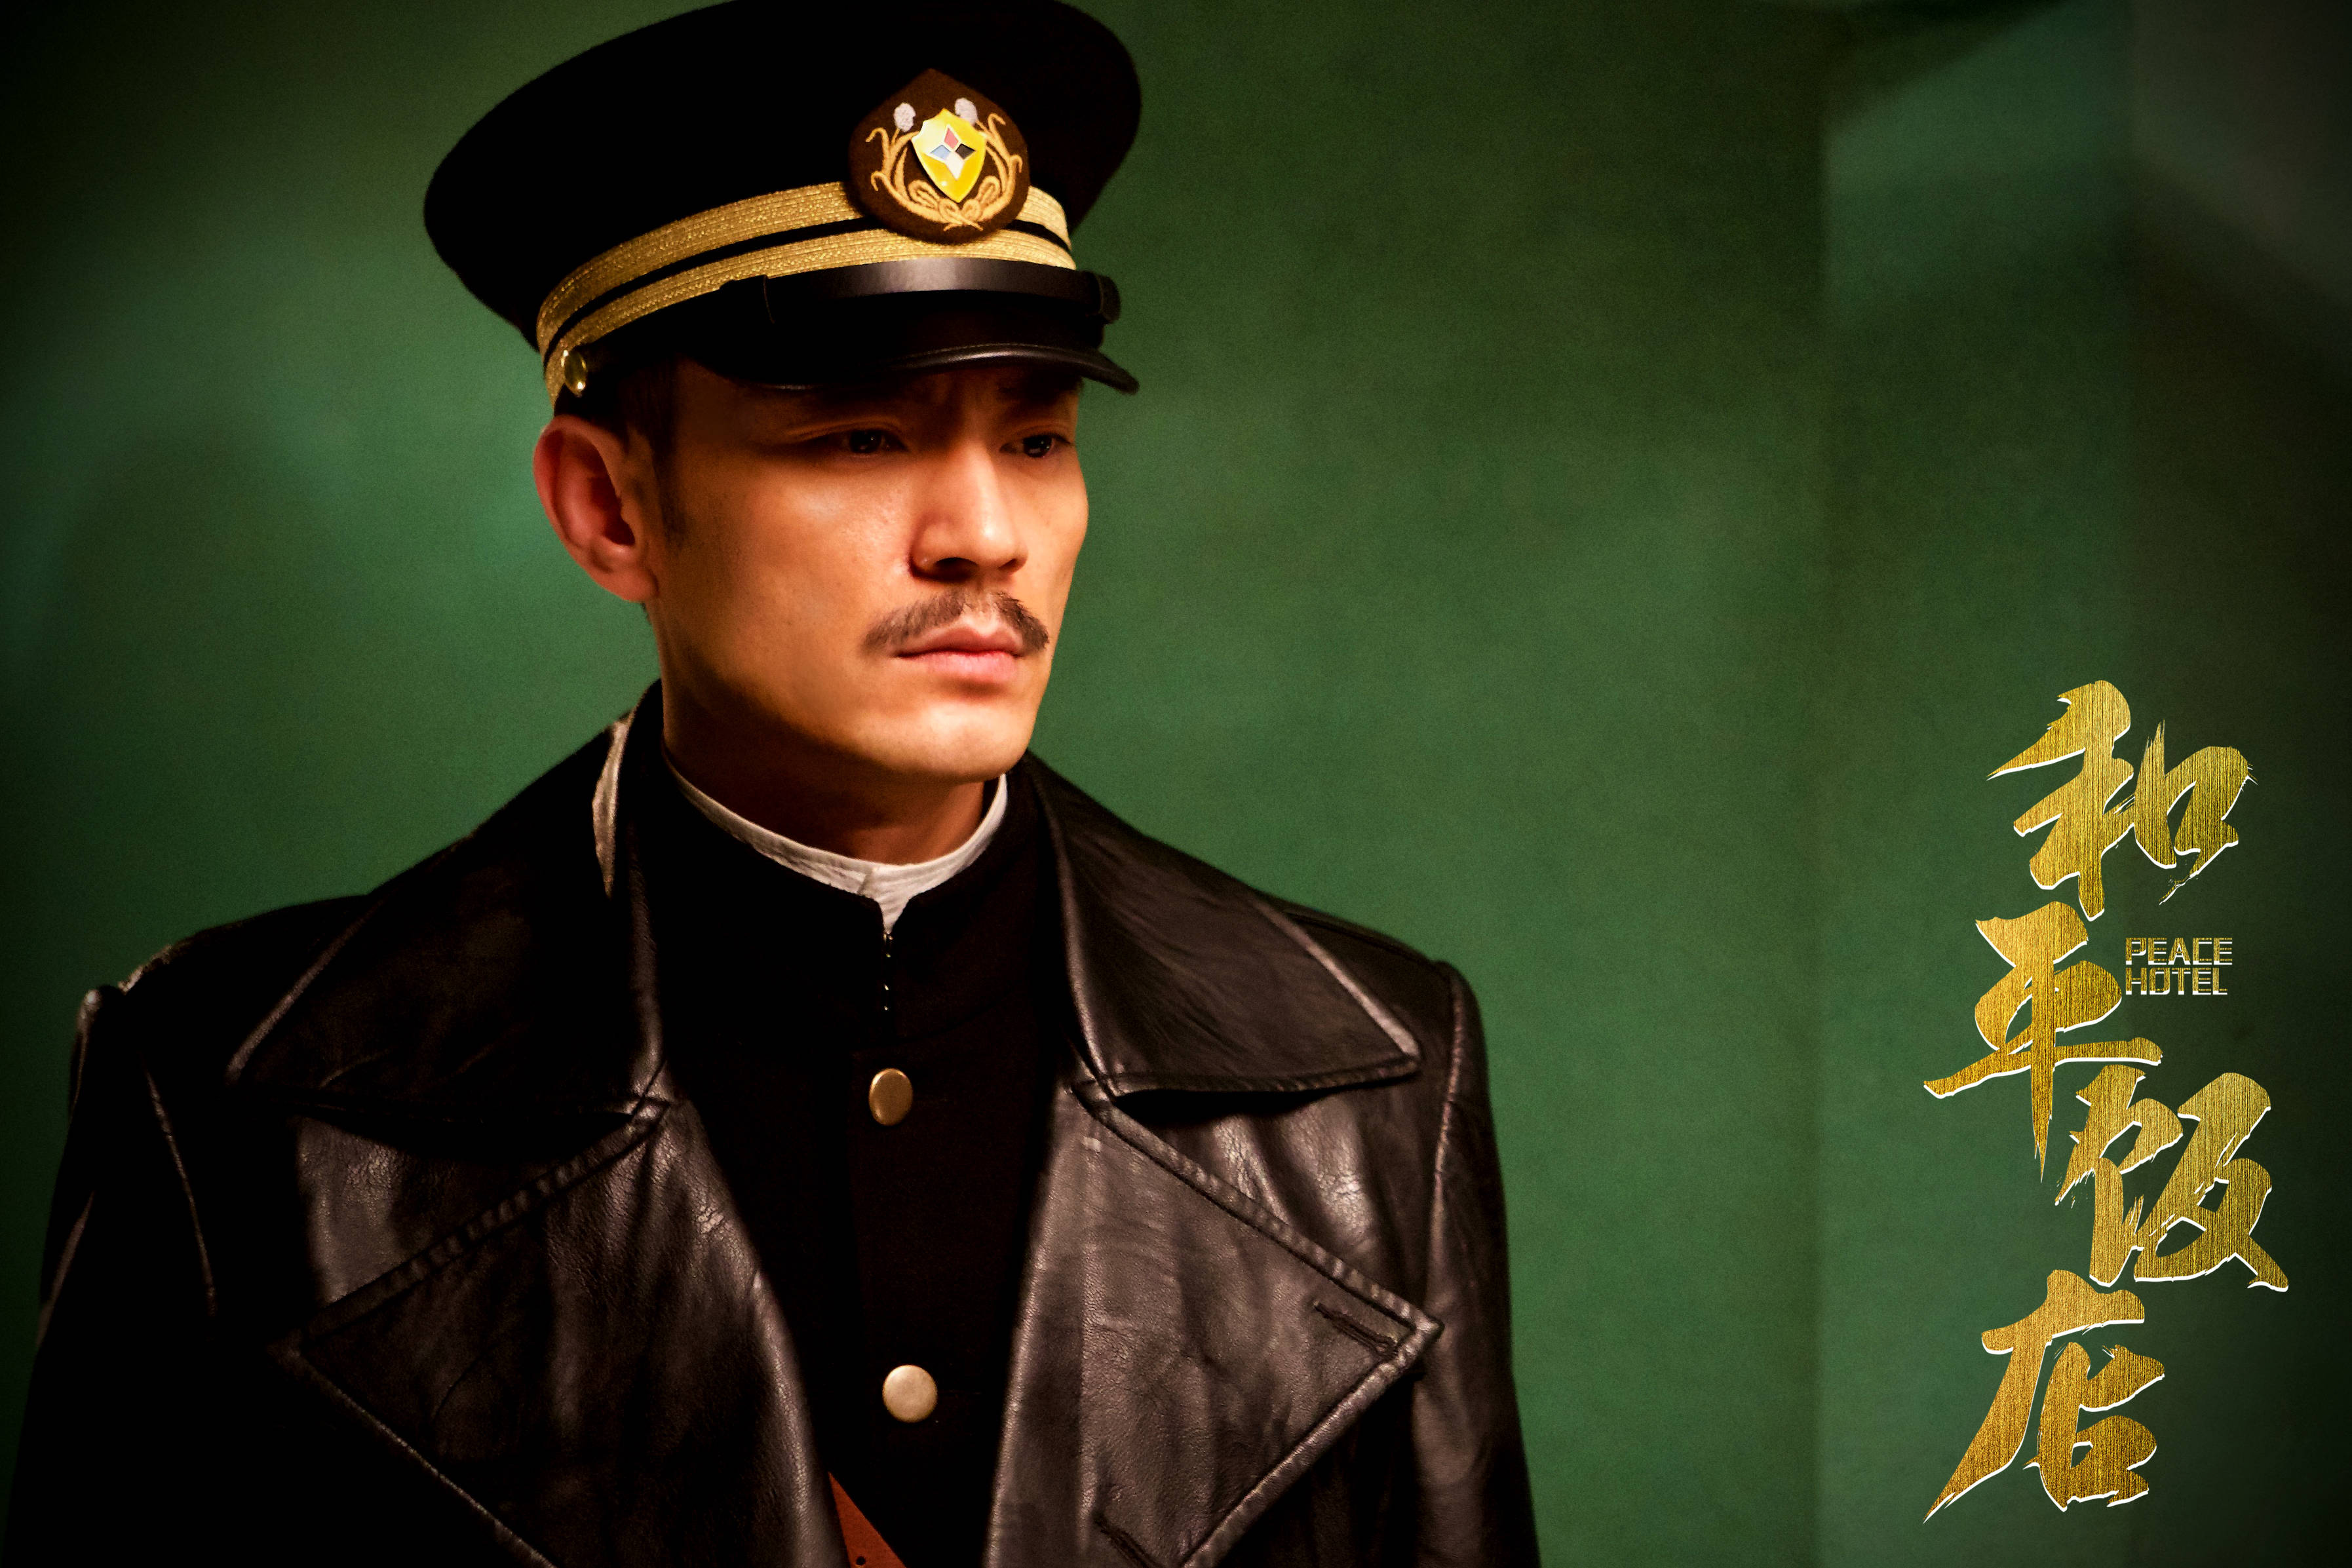 2008年,李光洁凭借在谍战剧《特殊使命》里饰演独具魅力的孤胆英雄巩